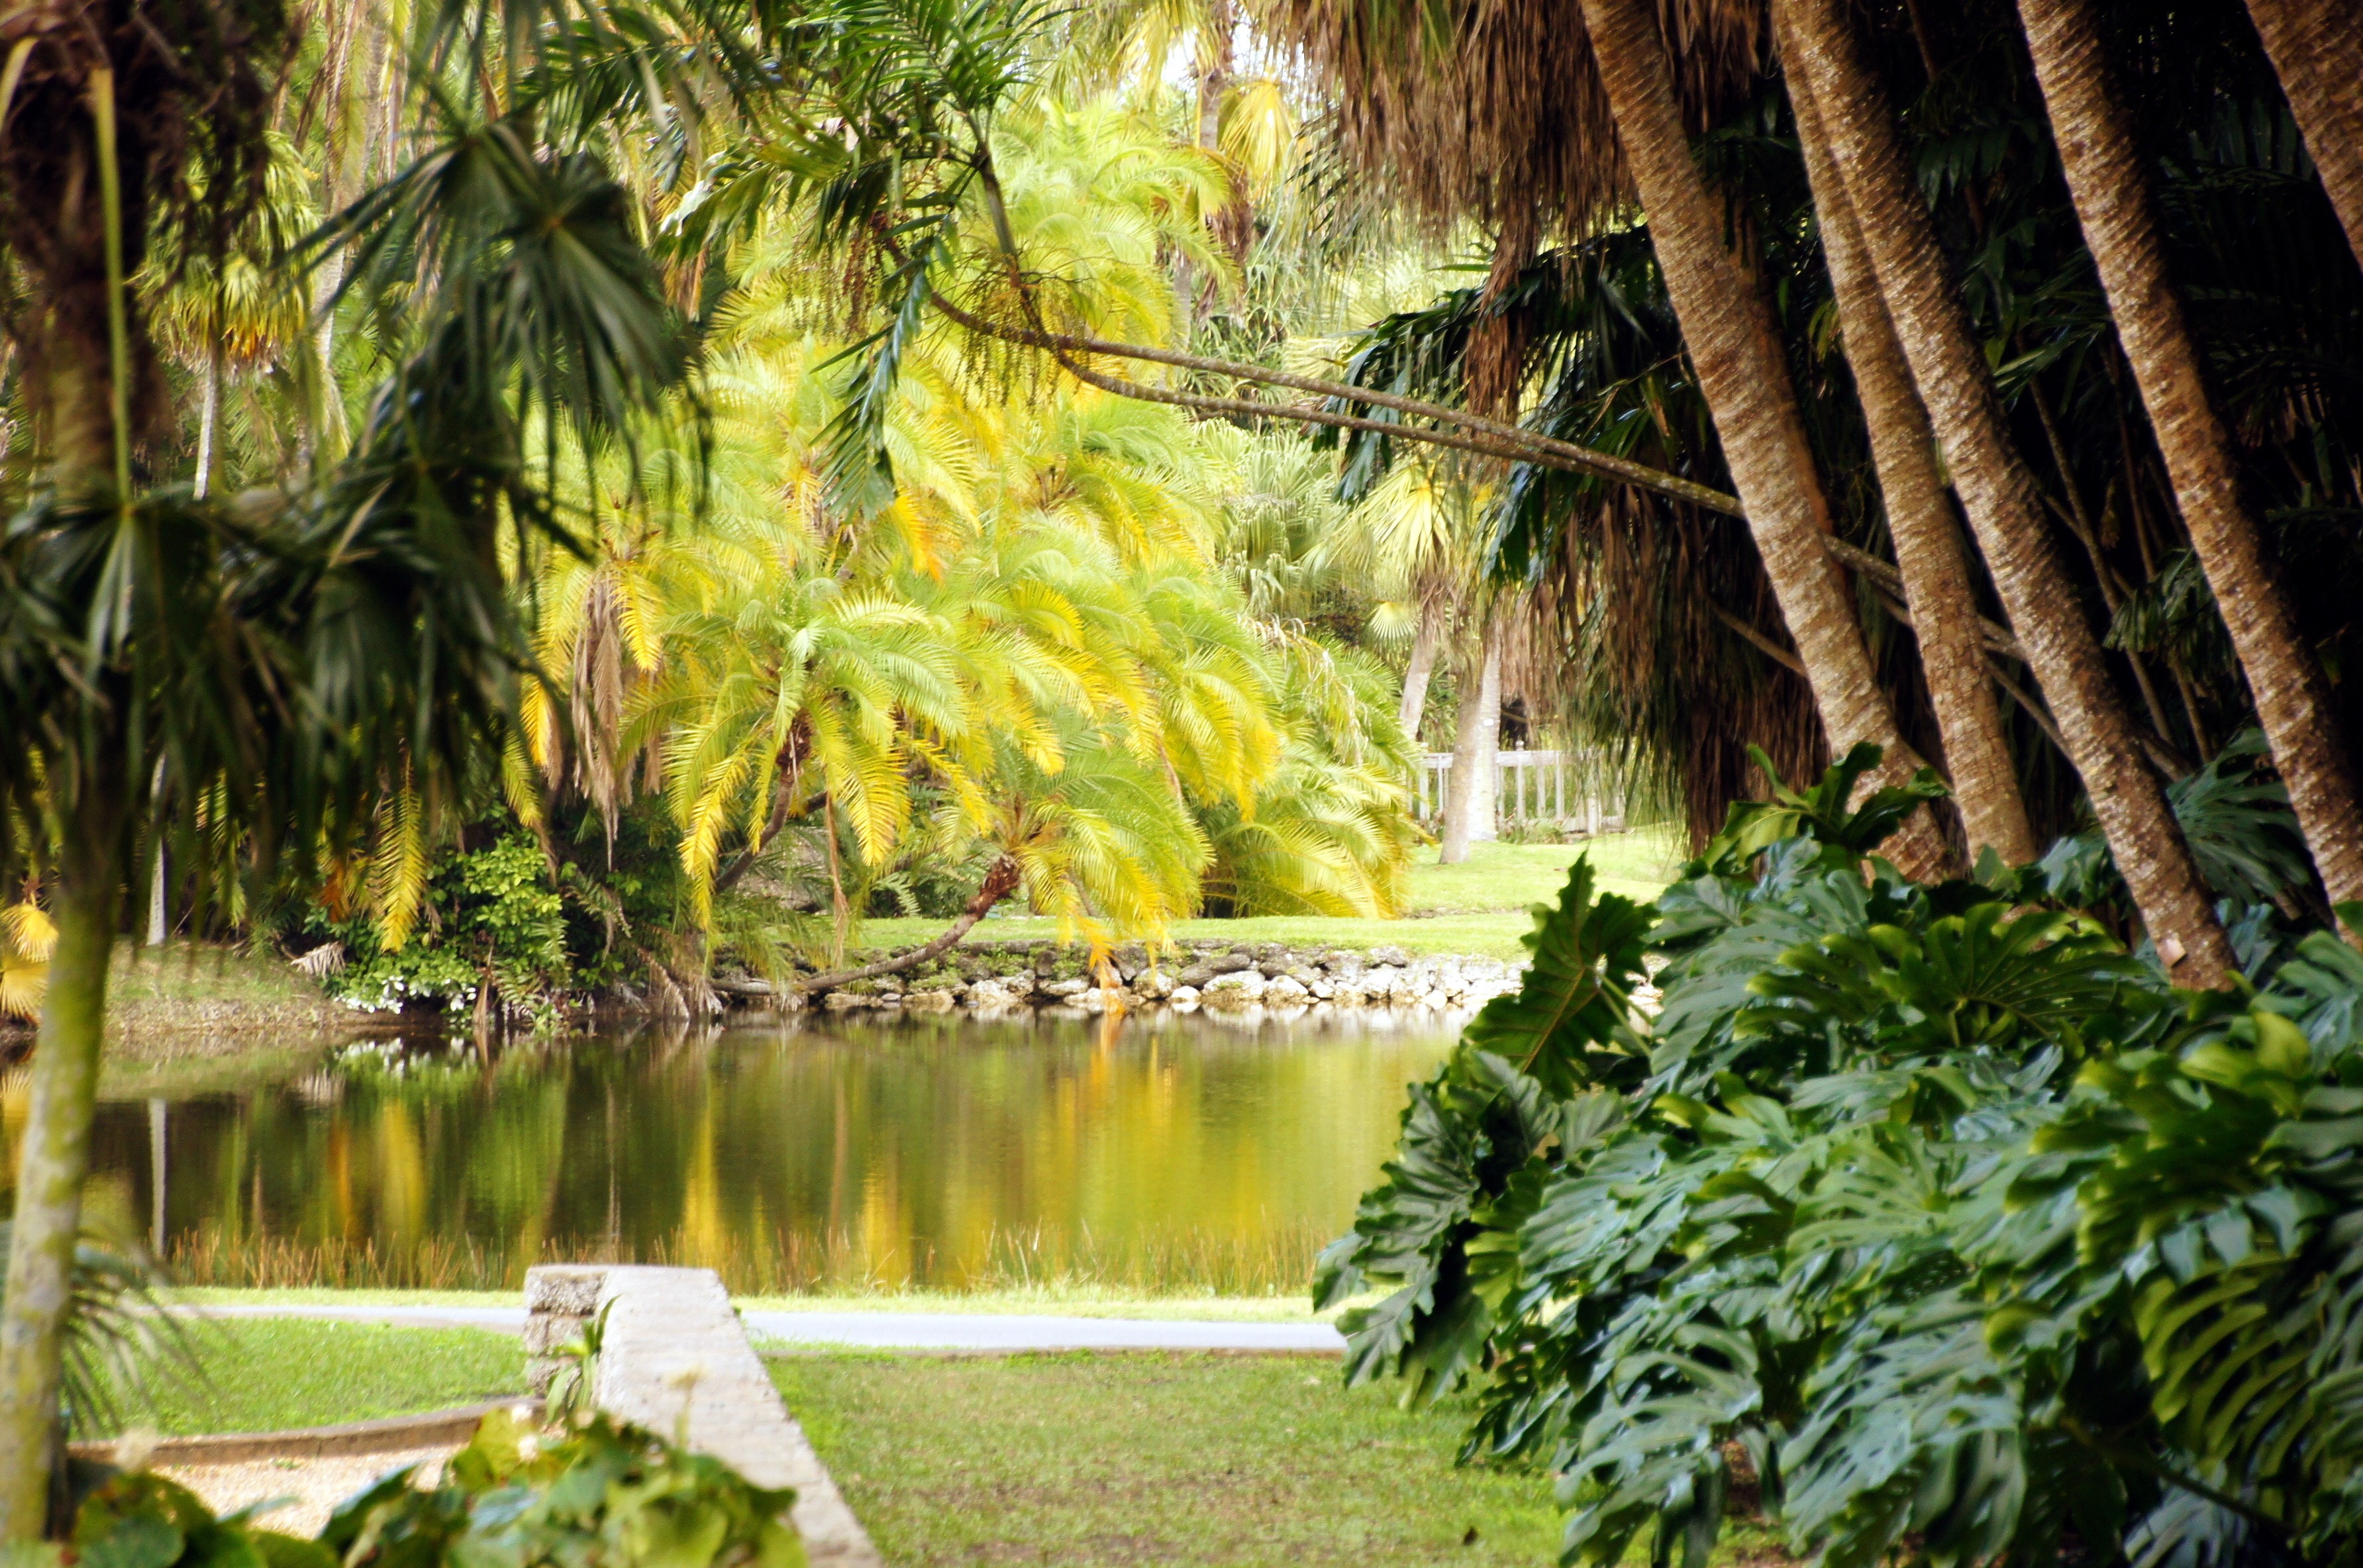 fairchild tropical botanic garden